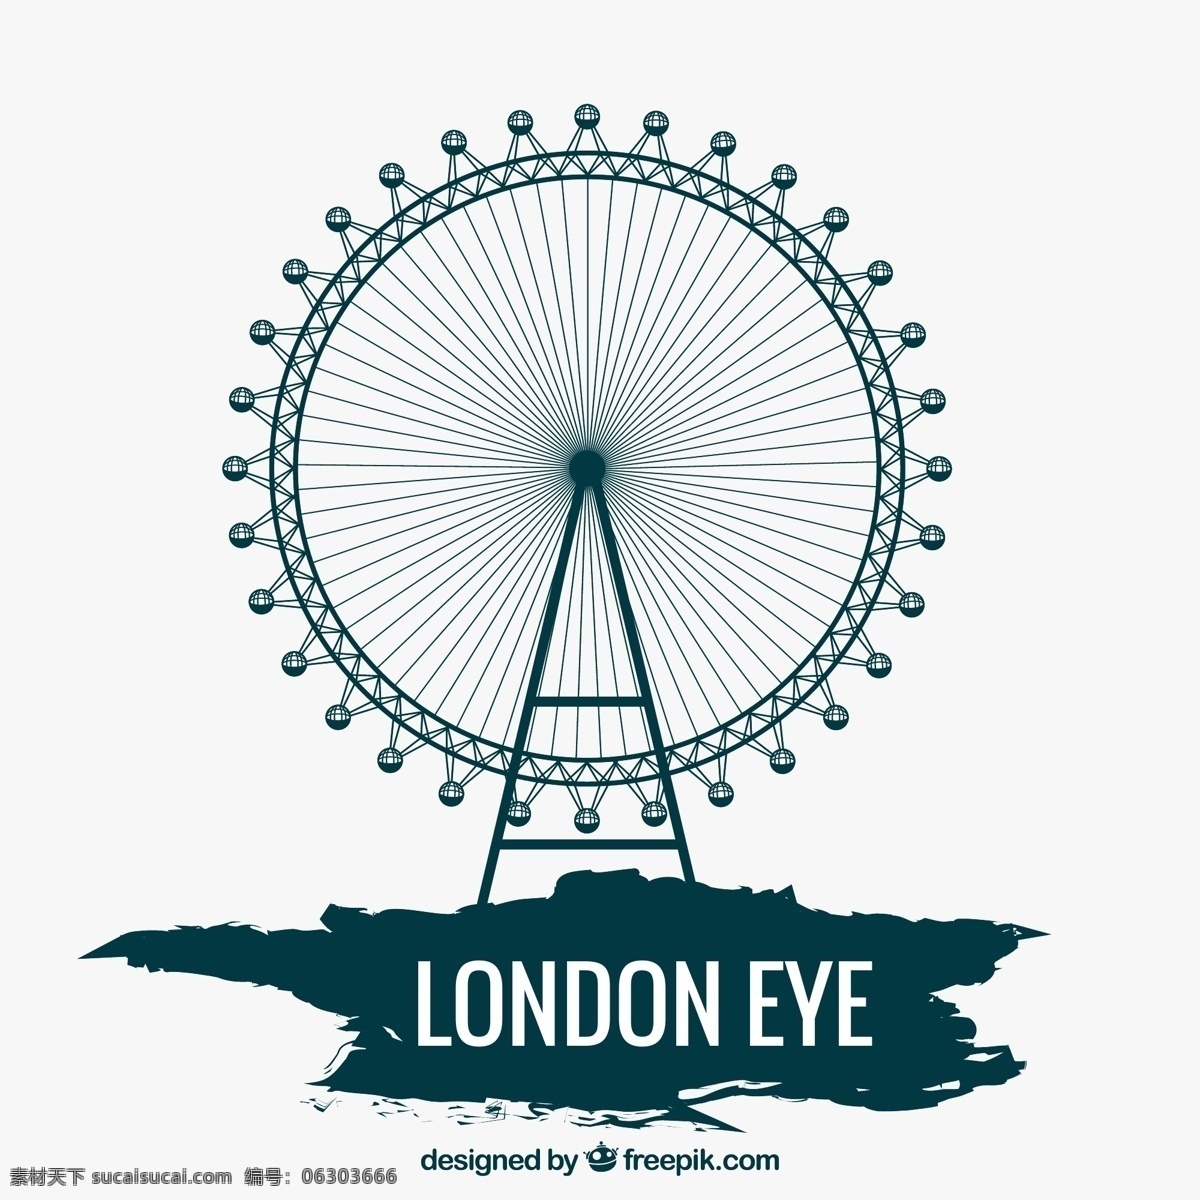 摩天轮 英国 观景摩天轮 伦敦 地标 伦敦眼 伦敦地标